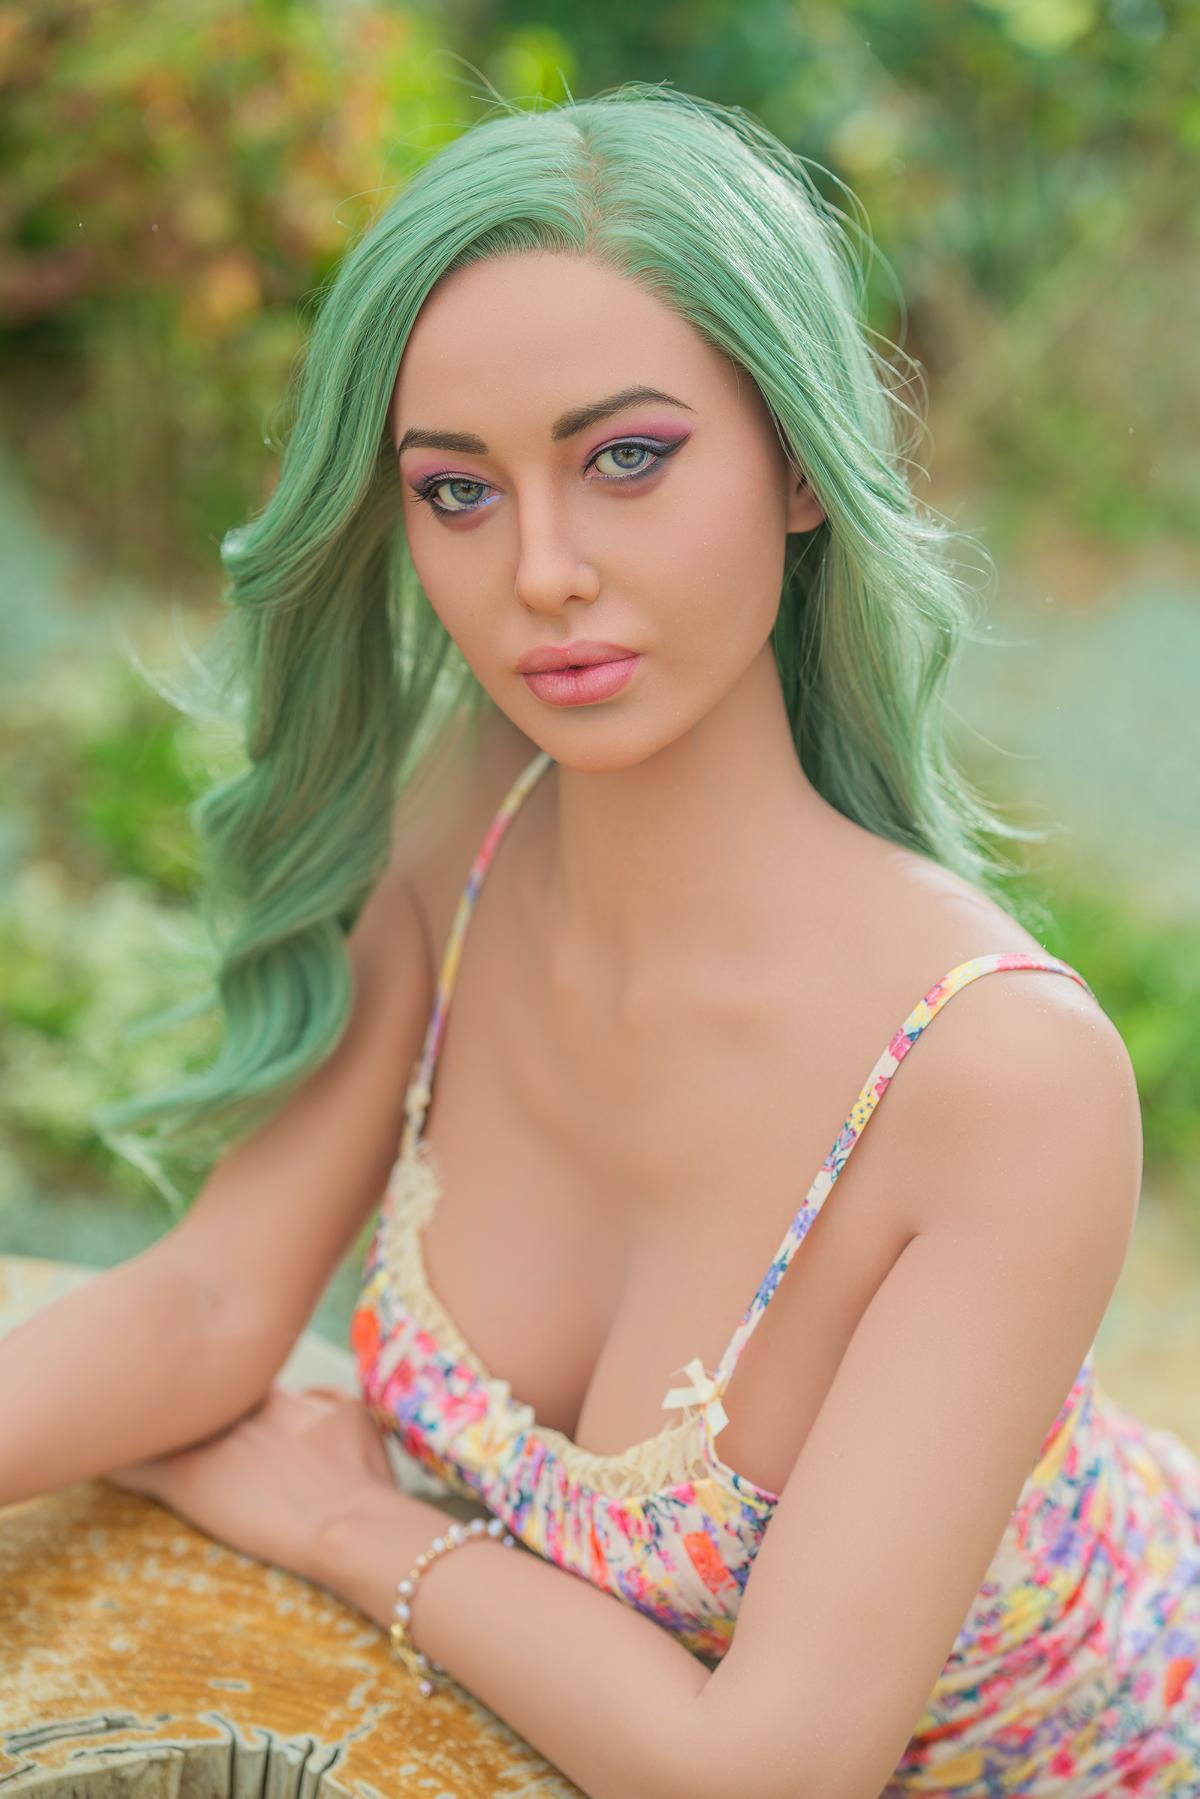 Arielle Ultra Premium Silicone Sex Doll